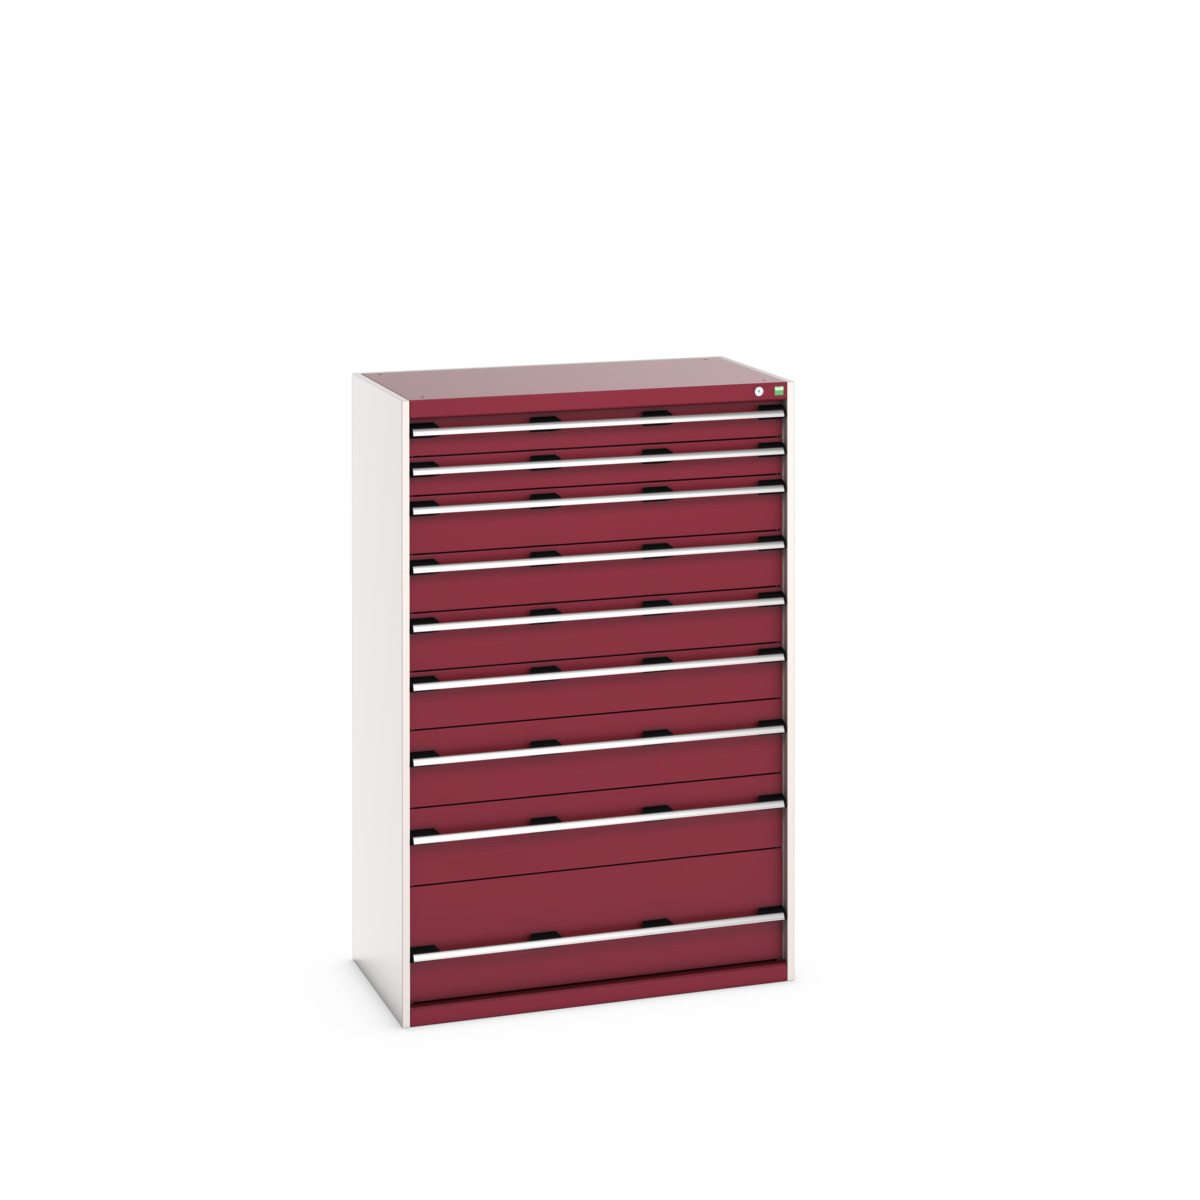 40021044.24V - cubio drawer cabinet